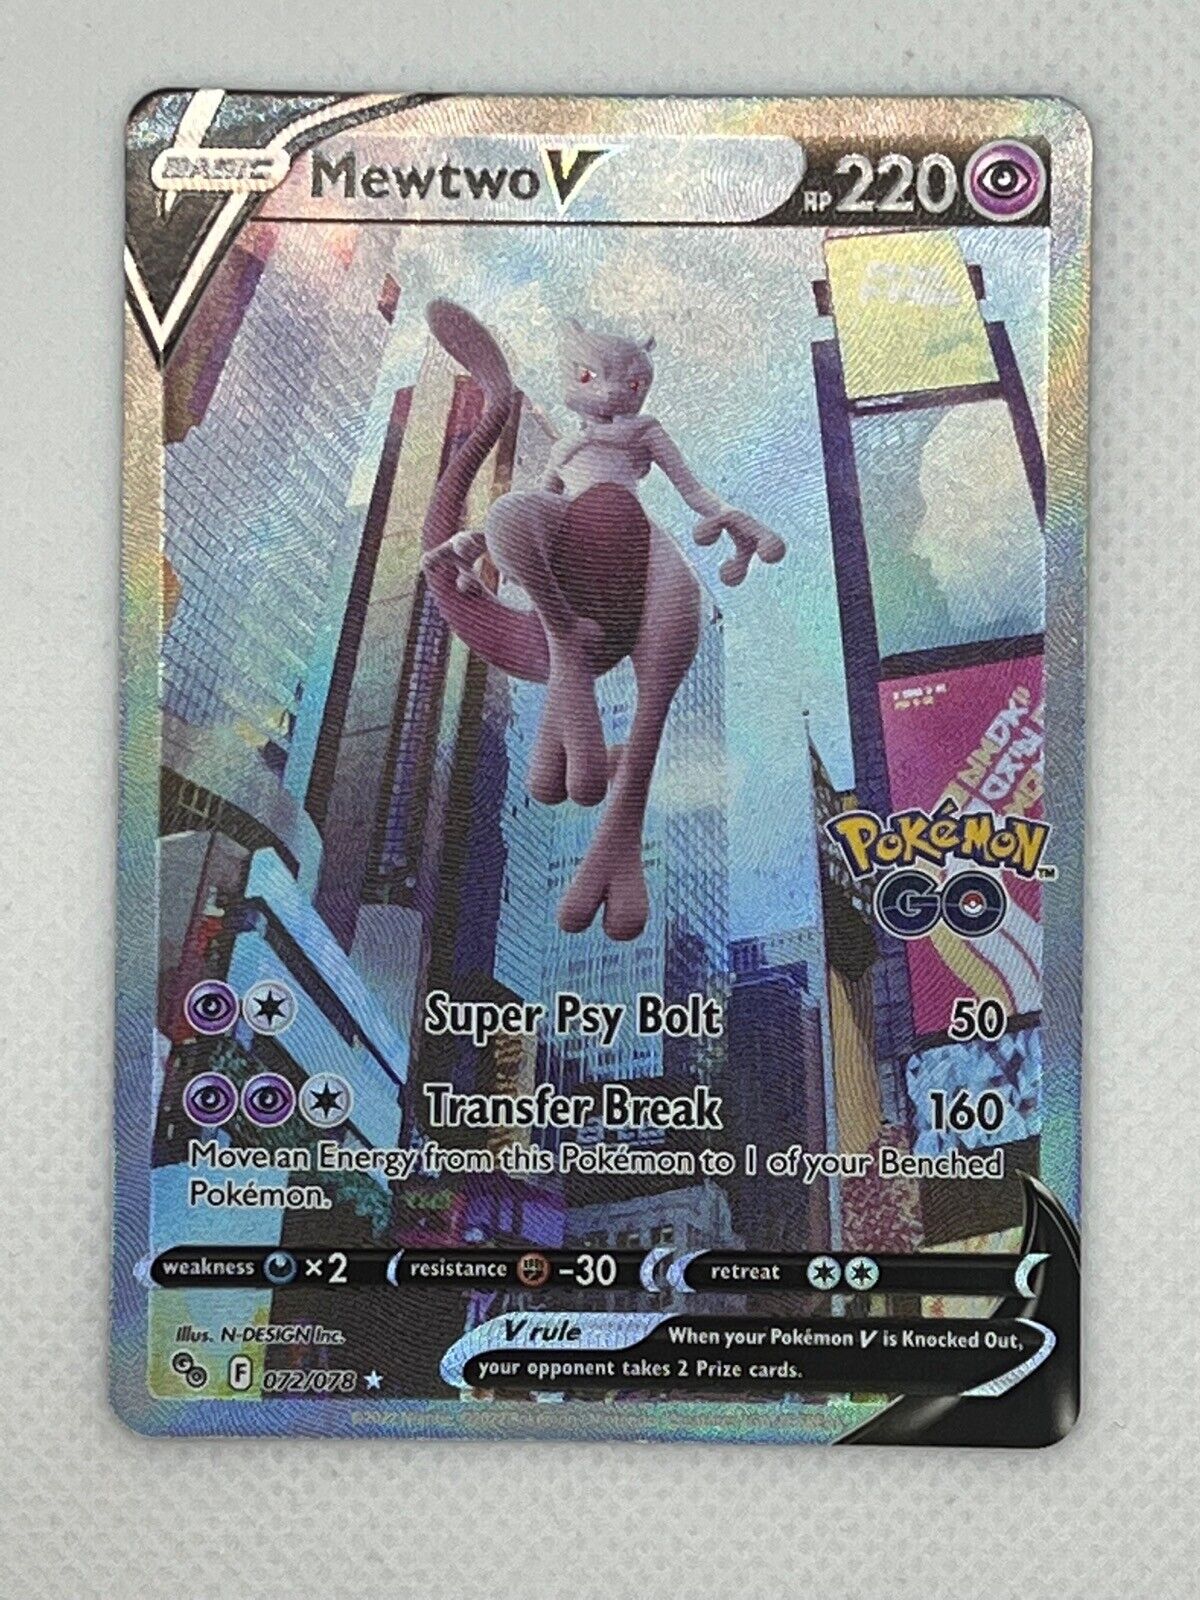 Pokemon Go TCG Card NM/M 072/078 Mewtwo V Full Art Rare